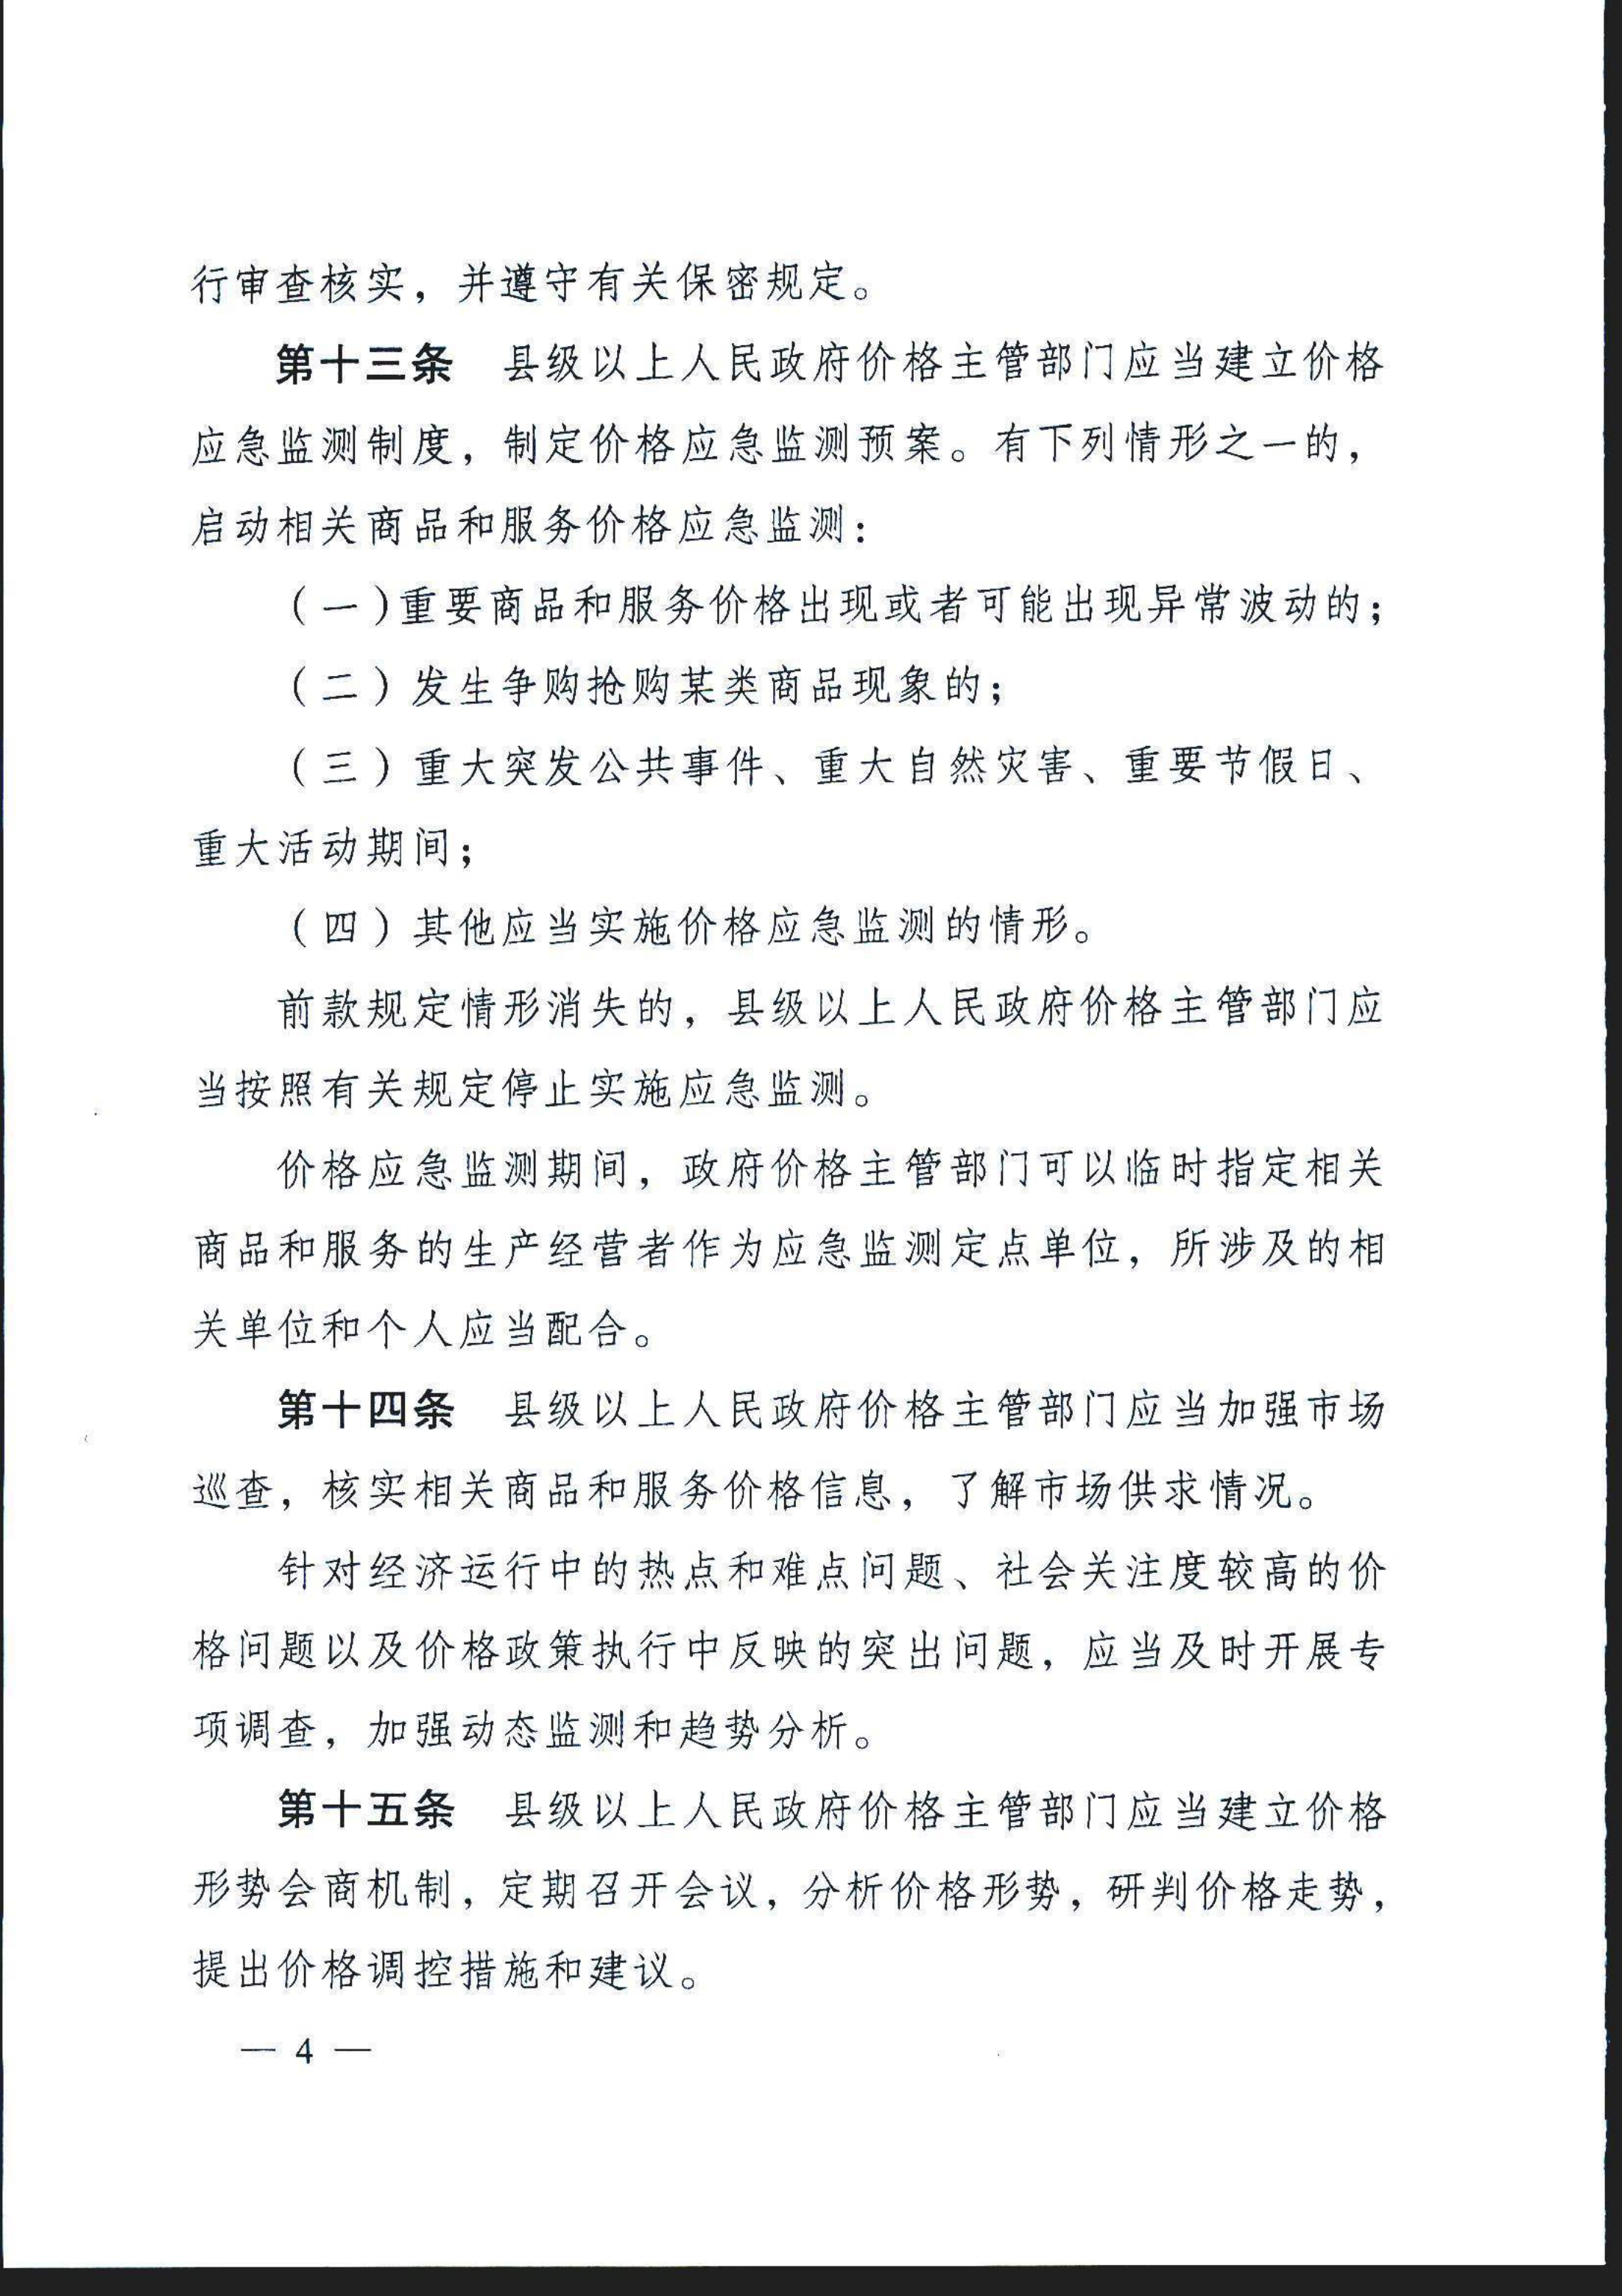 安徽省价格监测预警管理办法(1)(1)_5.png